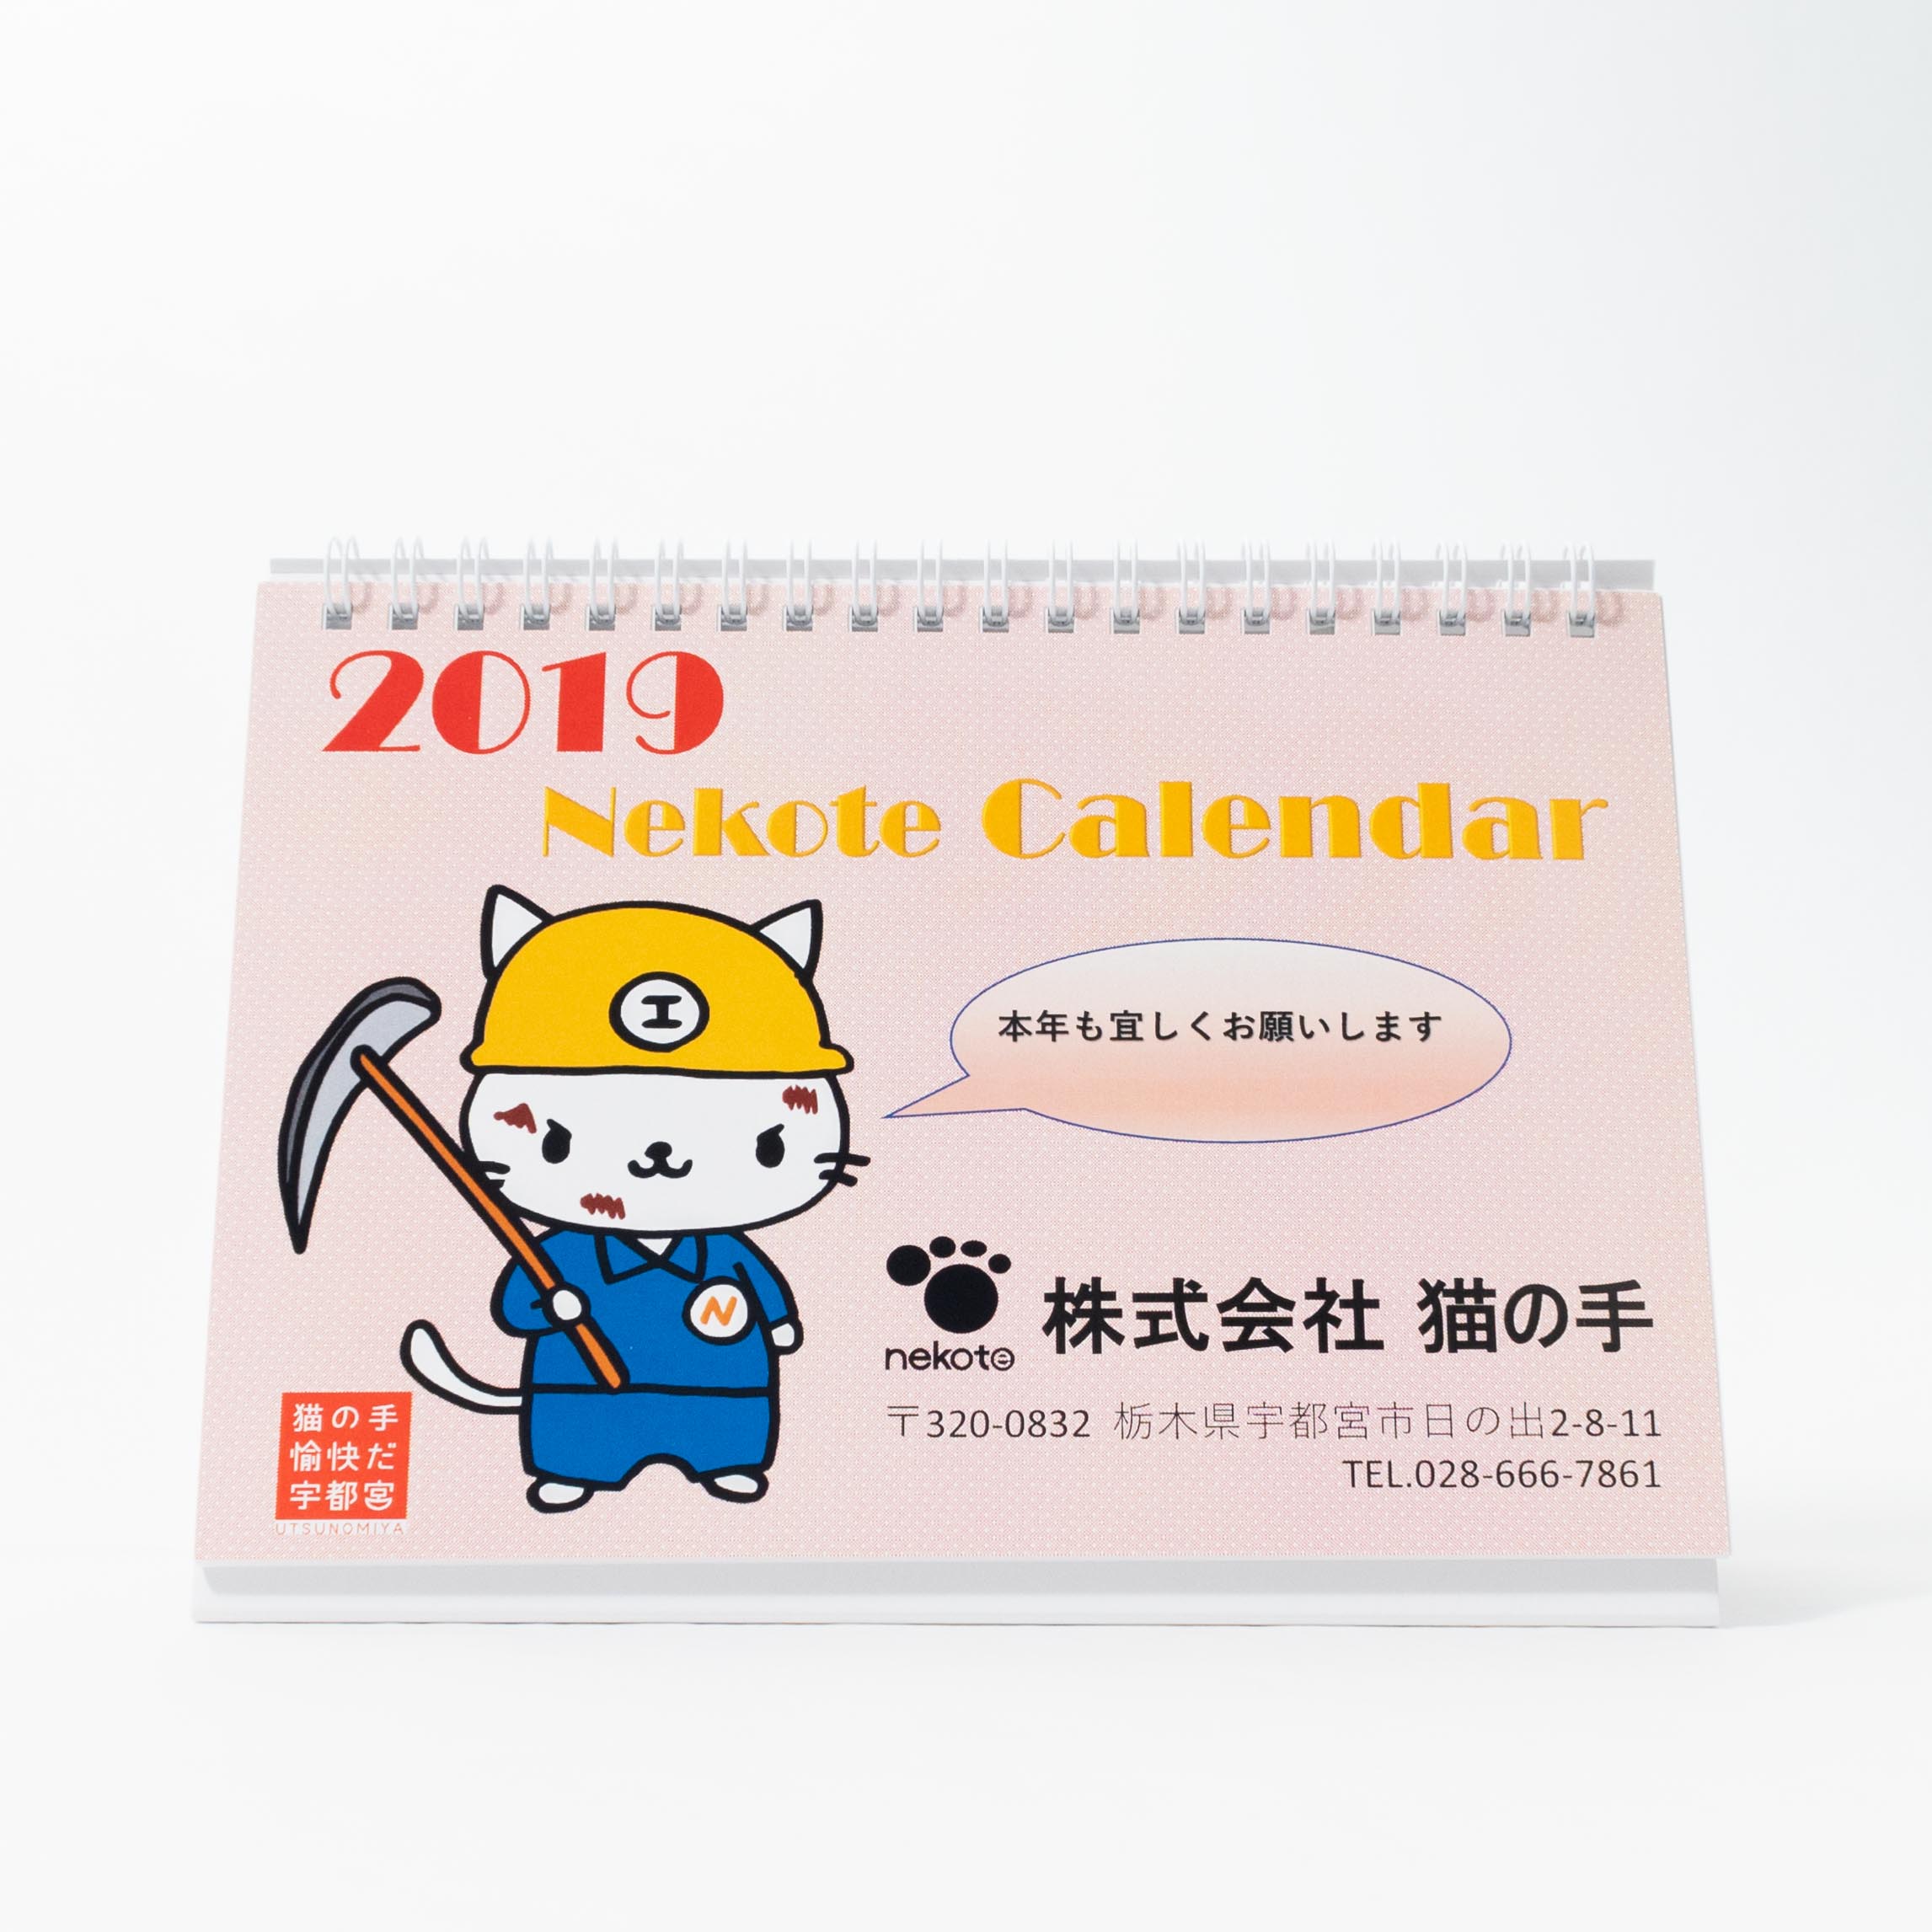 「株式会社猫の手 様」製作のオリジナルカレンダー